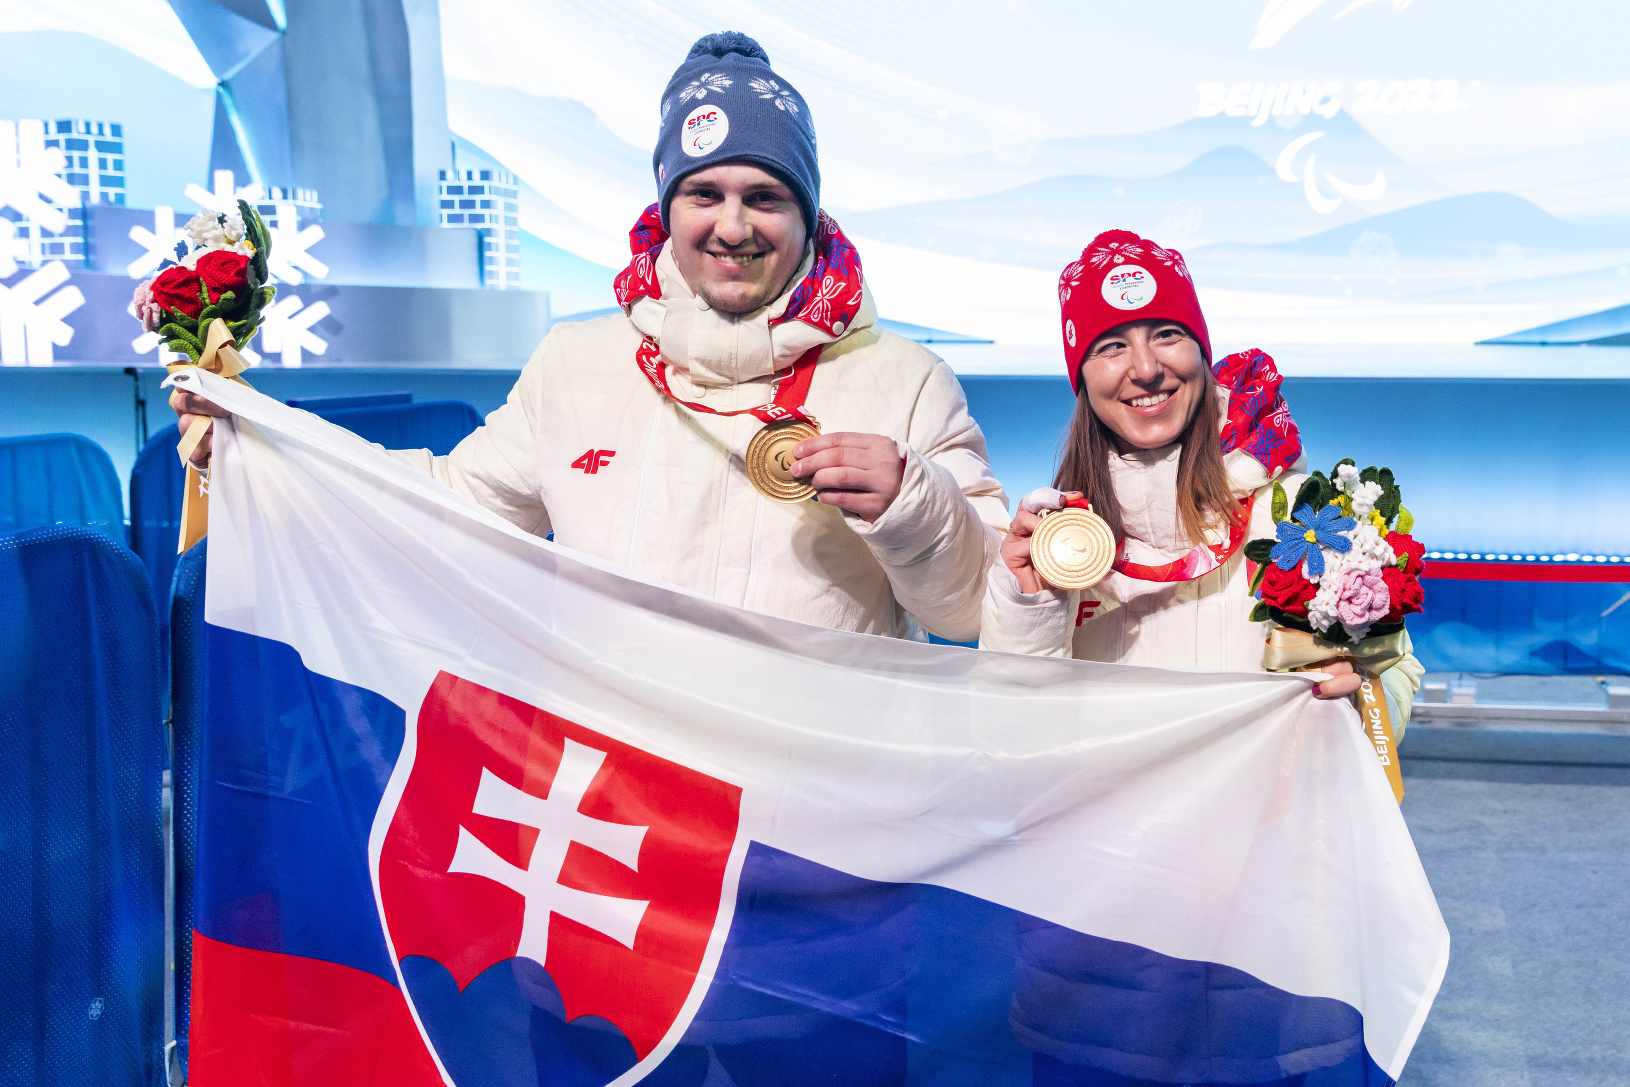 Sprava: Slovenská zjazdová lyžiarka